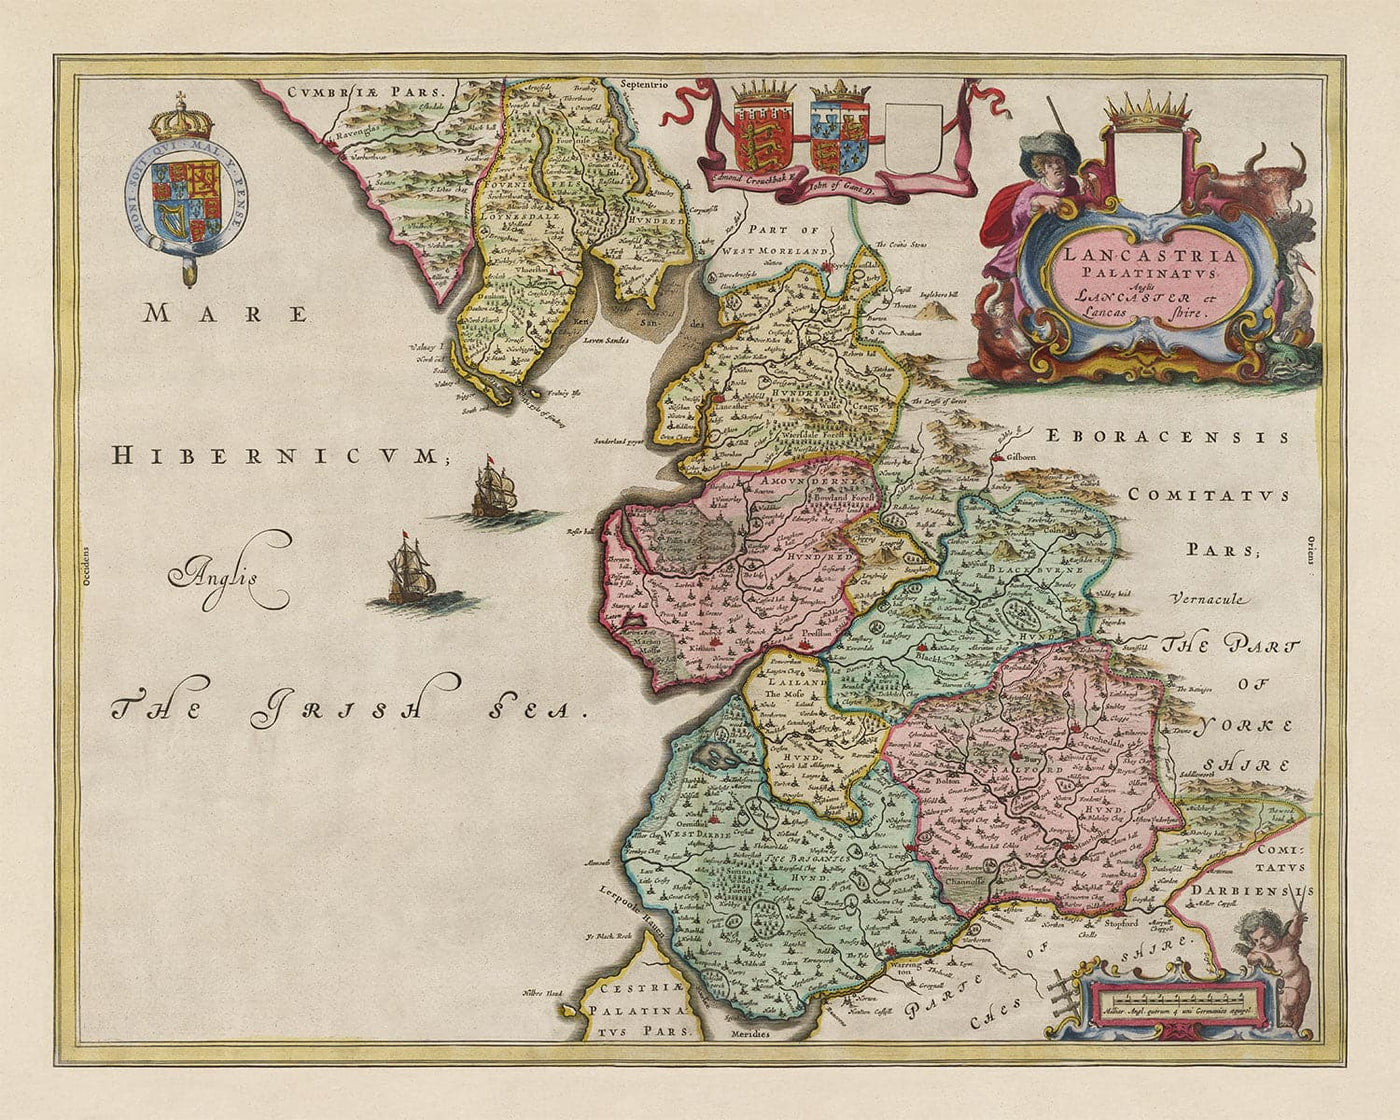 Ancienne carte de Lancashire, 1611 par Joan Blaeu - Manchester, Liverpool, Preston, Blackburn